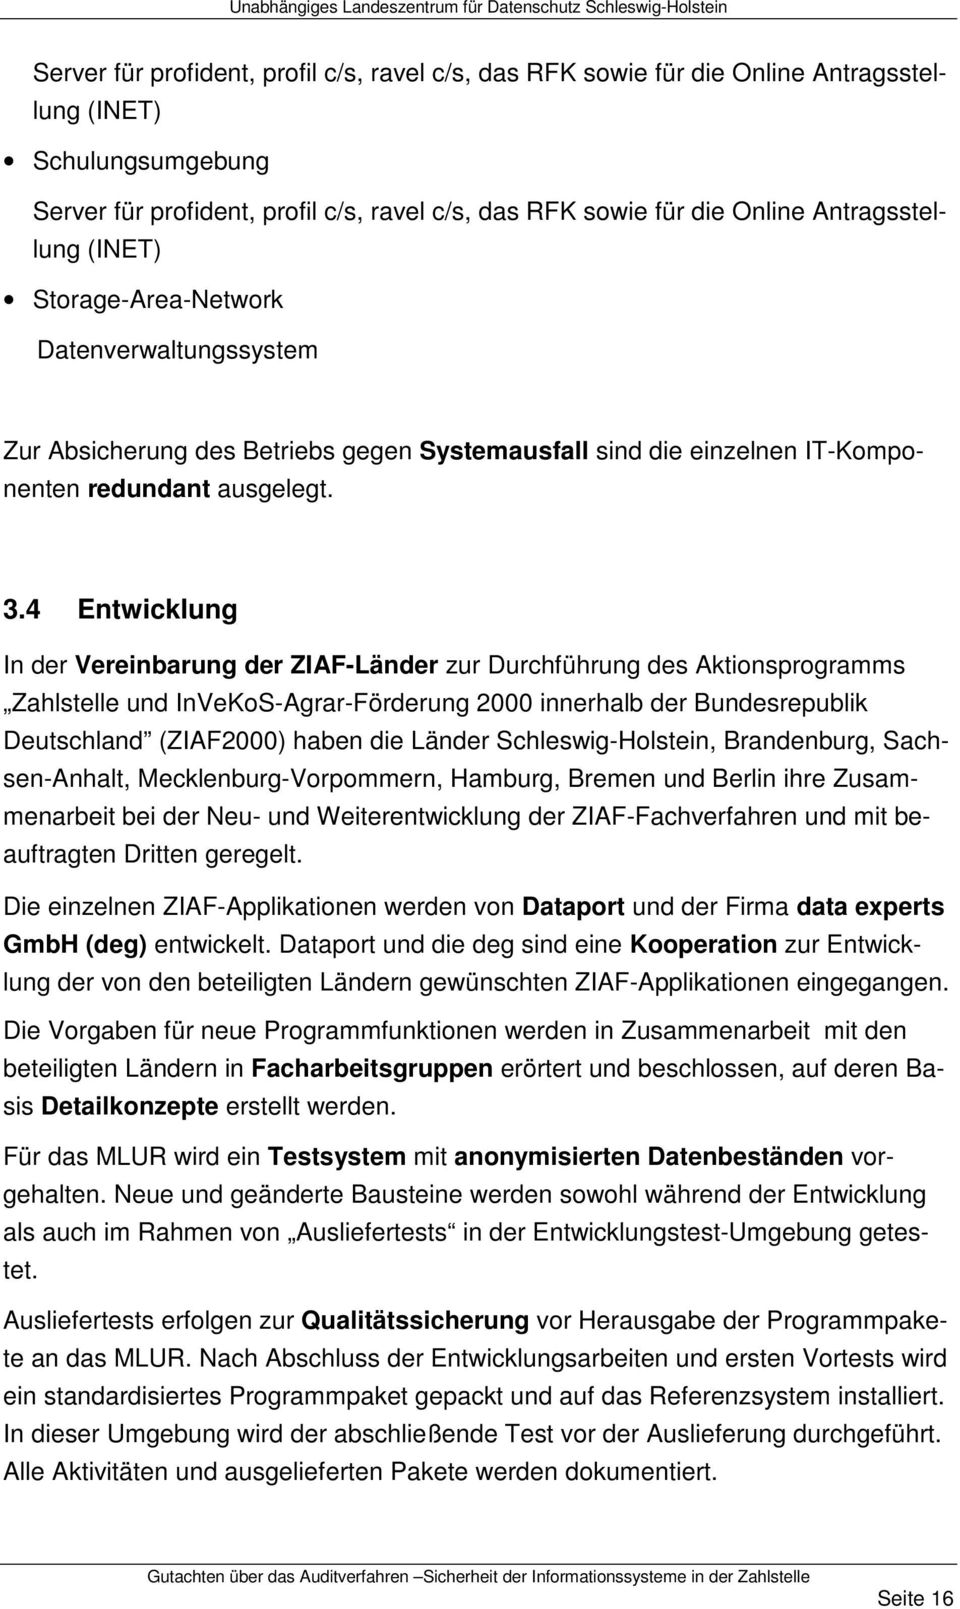 4 Entwicklung In der Vereinbarung der ZIAF-Länder zur Durchführung des Aktionsprogramms Zahlstelle und InVeKoS-Agrar-Förderung 2000 innerhalb der Bundesrepublik Deutschland (ZIAF2000) haben die